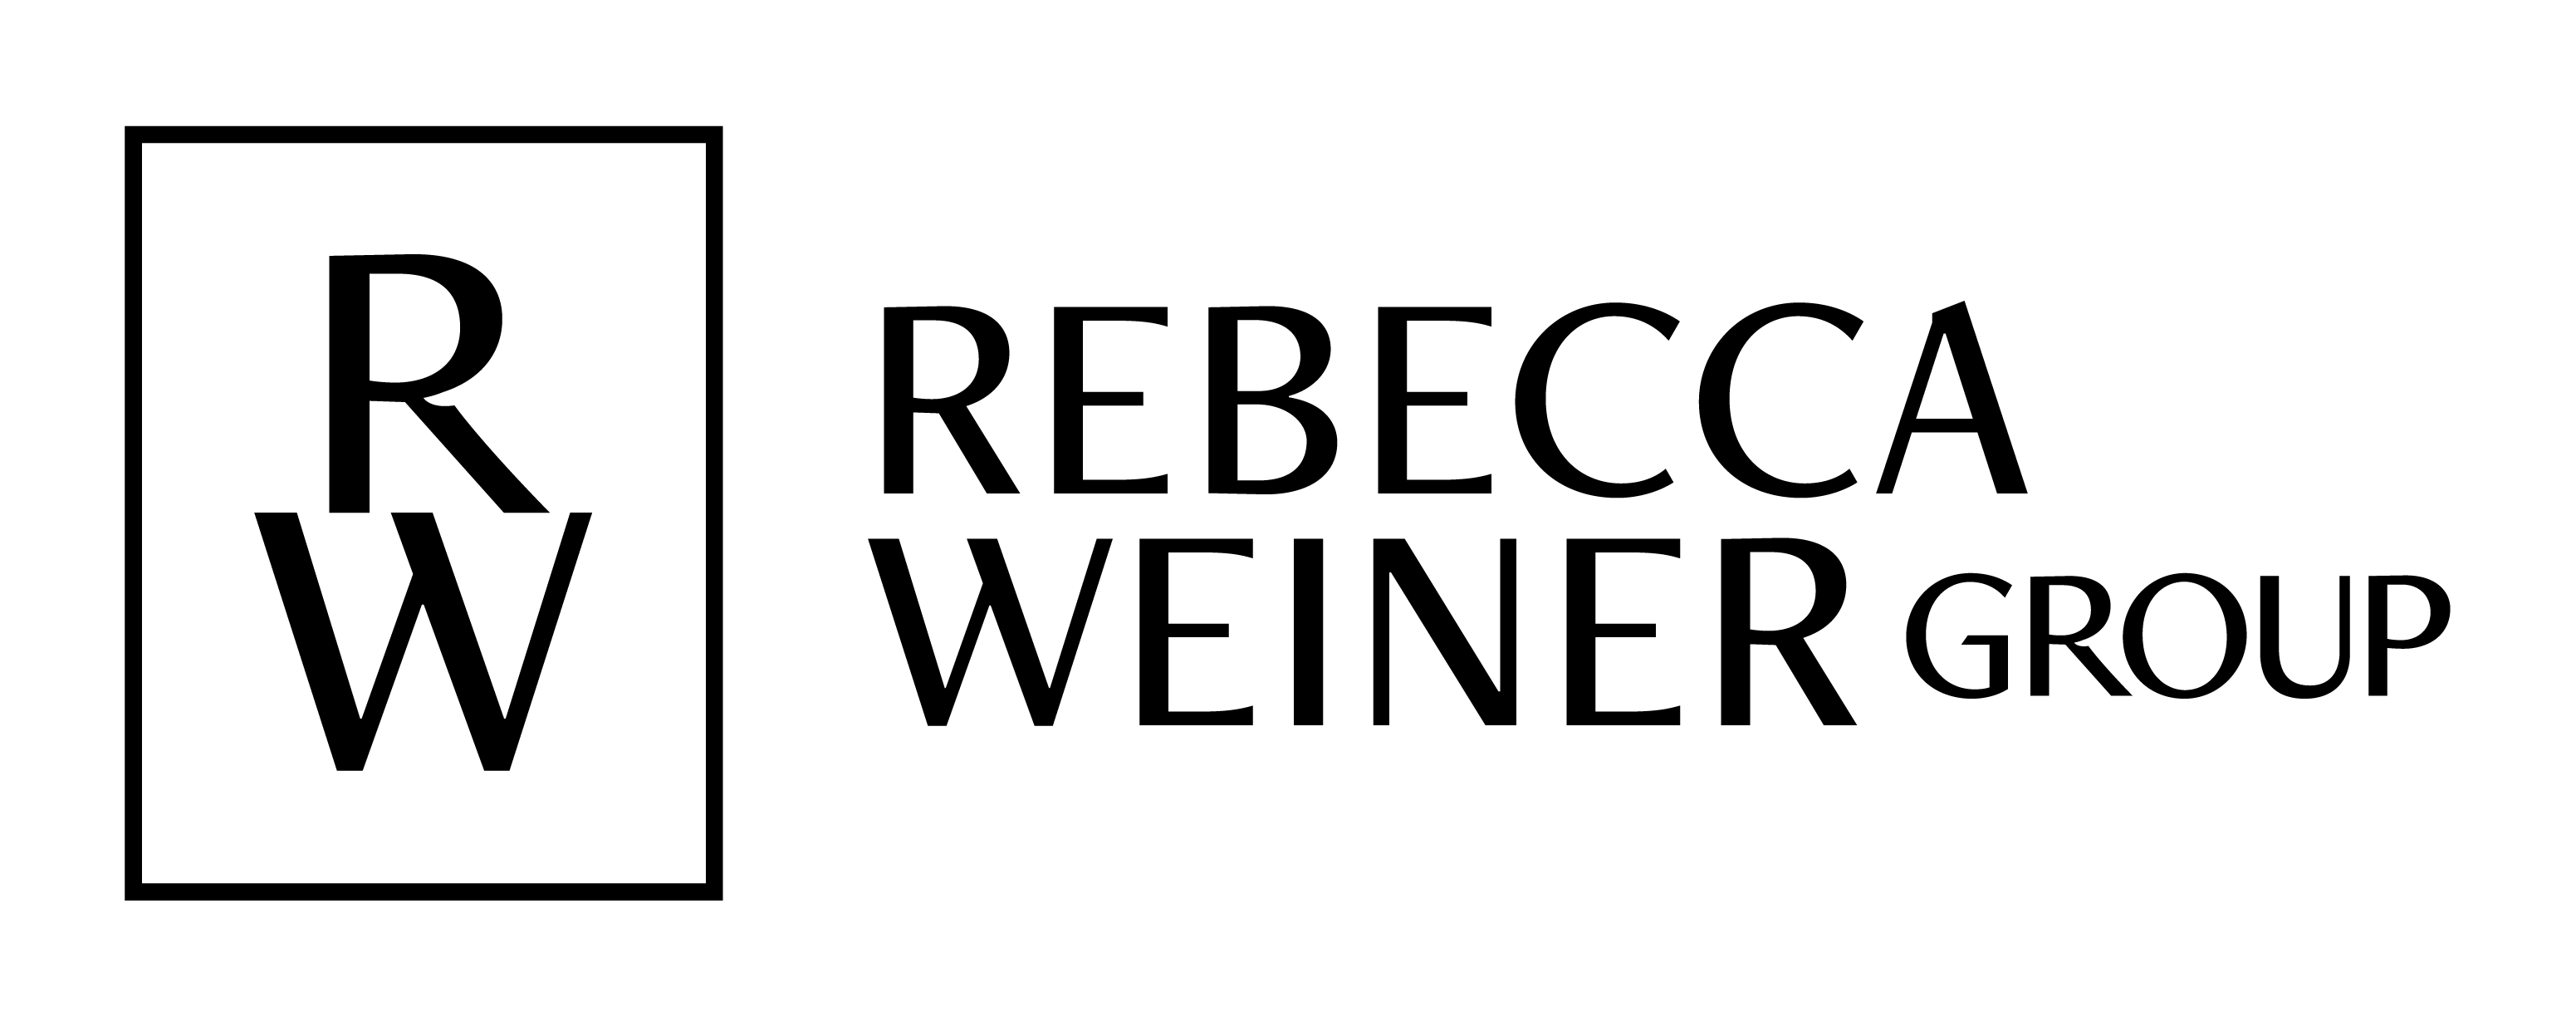 Rebecca Weiner Group logo